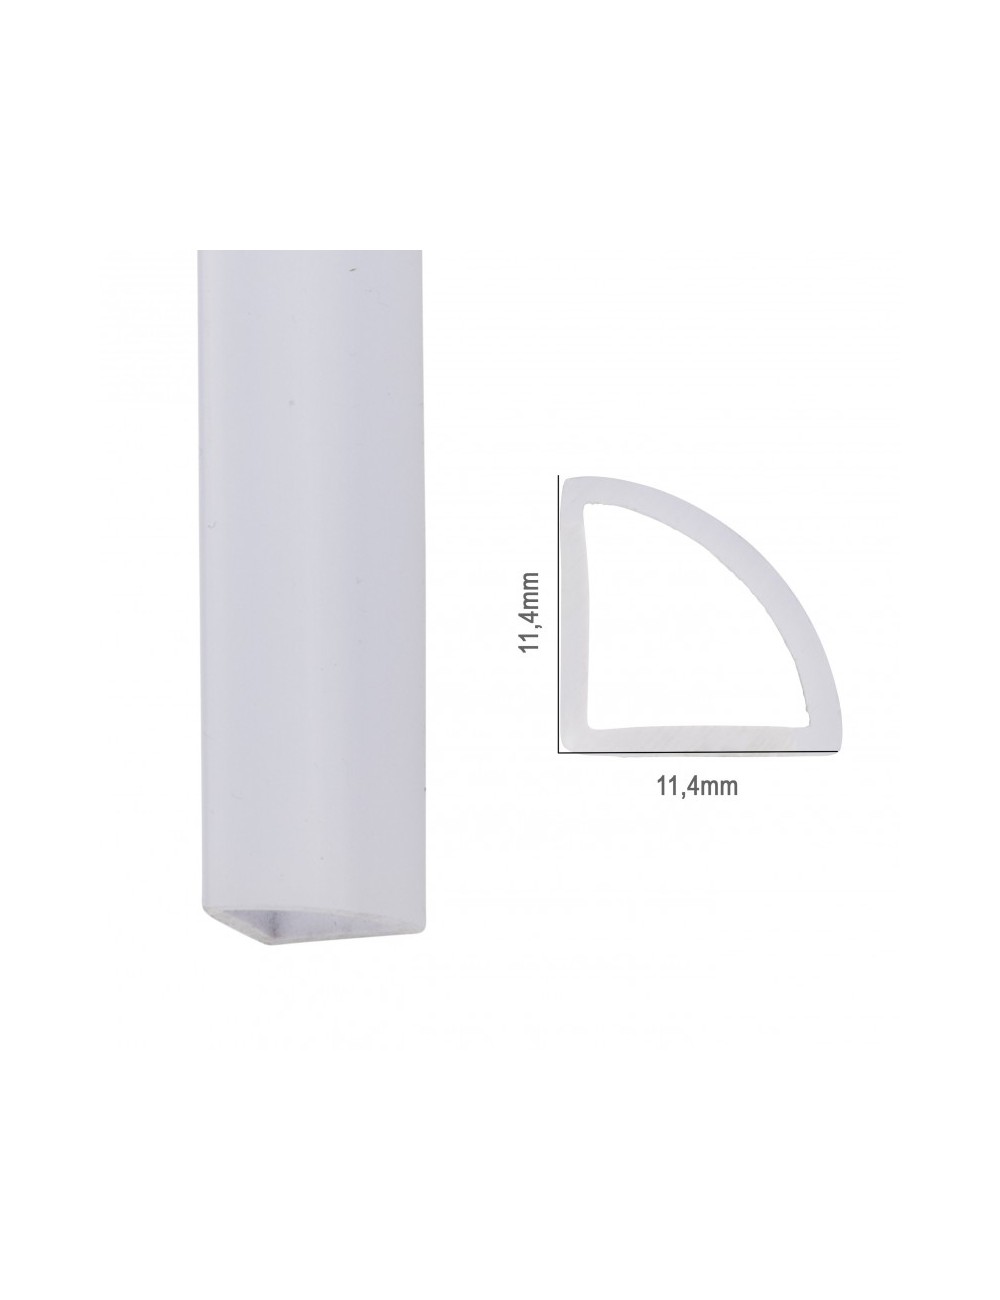 Profil Polycarbonate Pour Bande LED IP68 - Diffuseur laiteux SU-IP002 x 2M